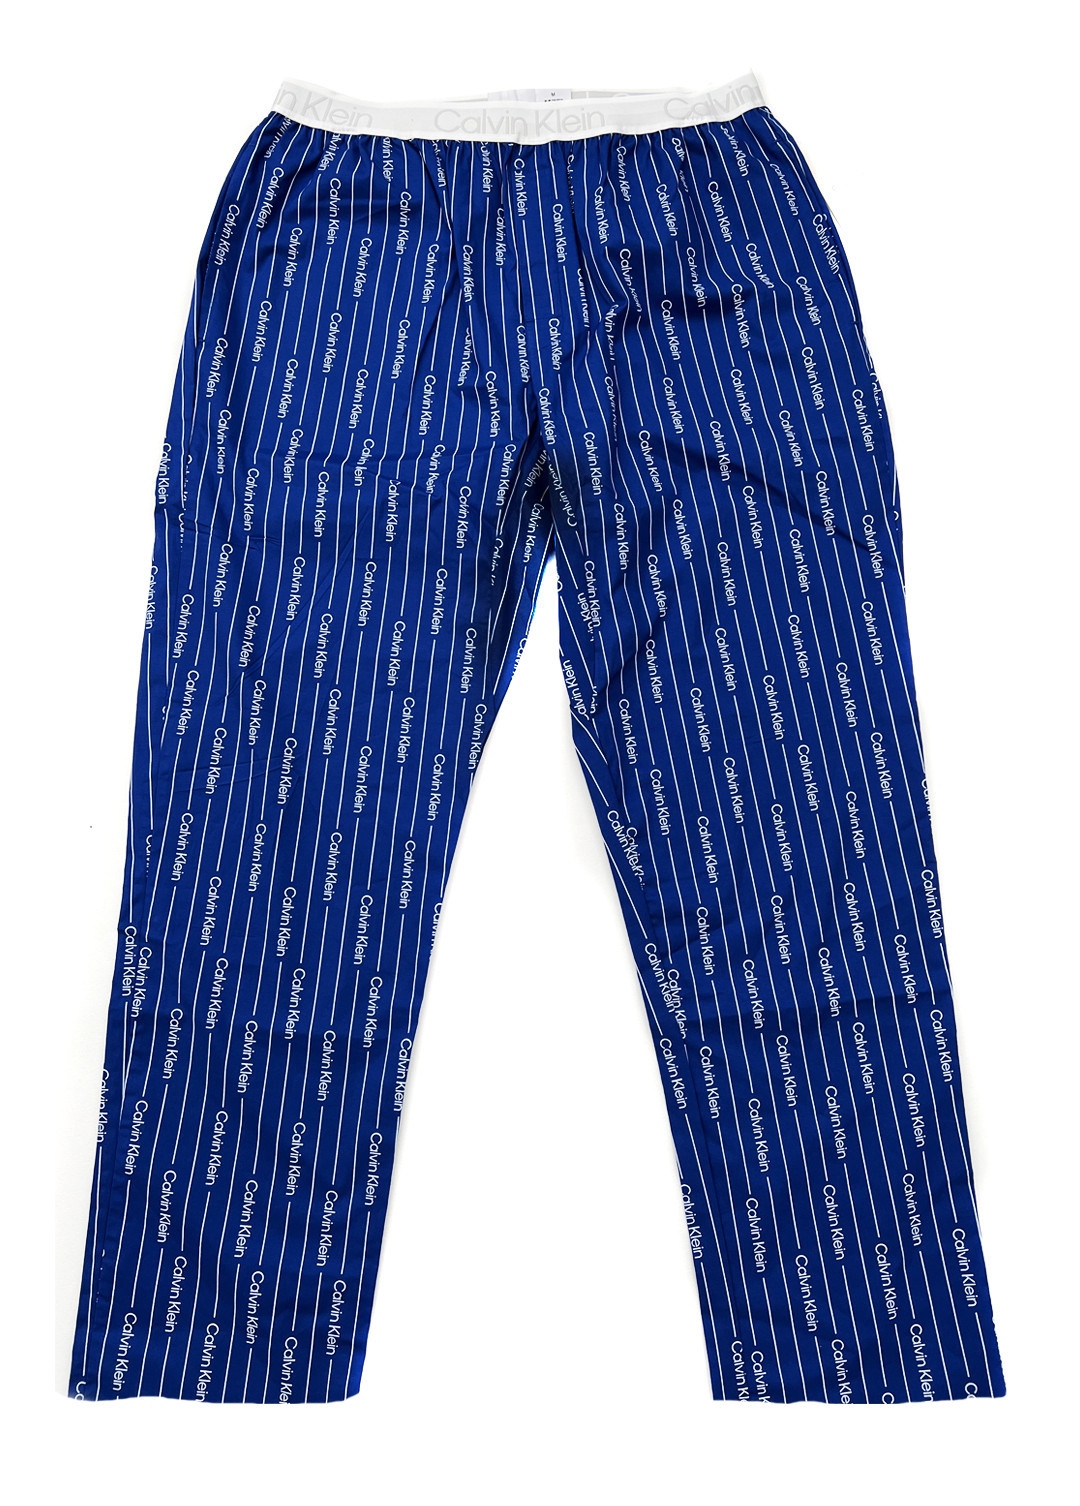 Pánské pyžamové kalhoty - NM2180E 1MR - modrá/bílá - Calvin Klein L modrá/bílá